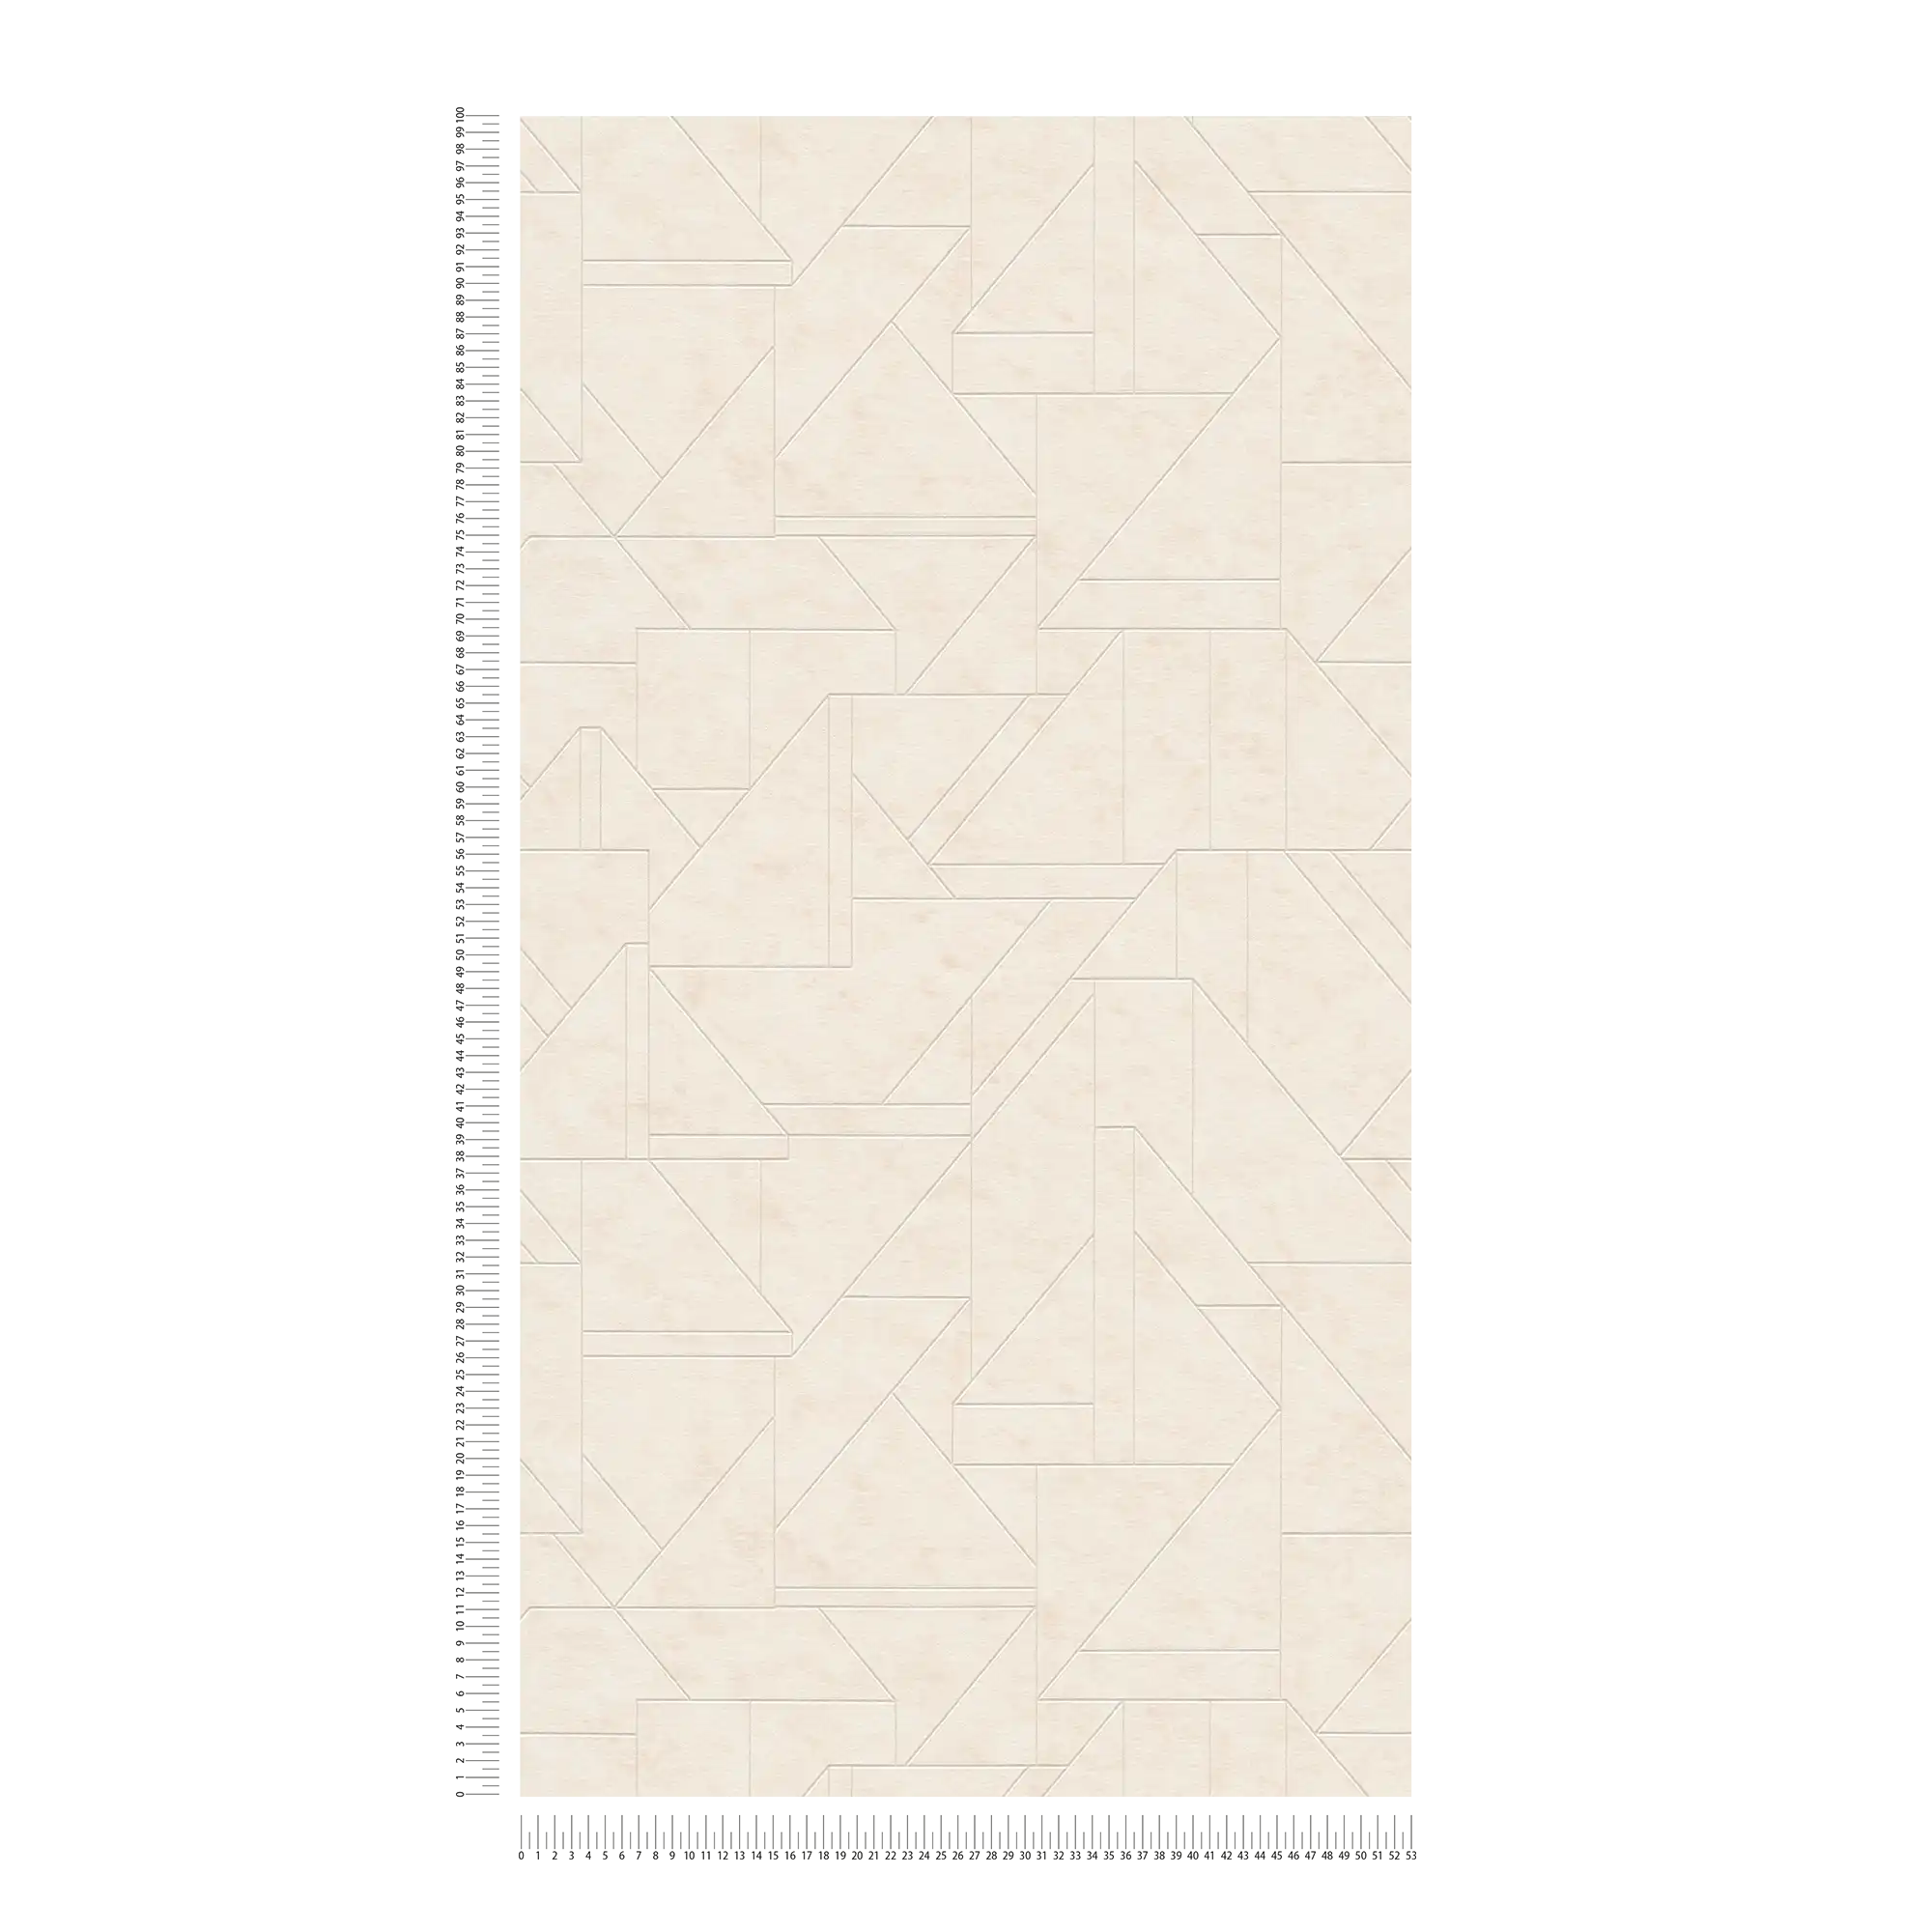             Papier peint intissé avec motif de lignes graphiques - crème, blanc, argenté
        